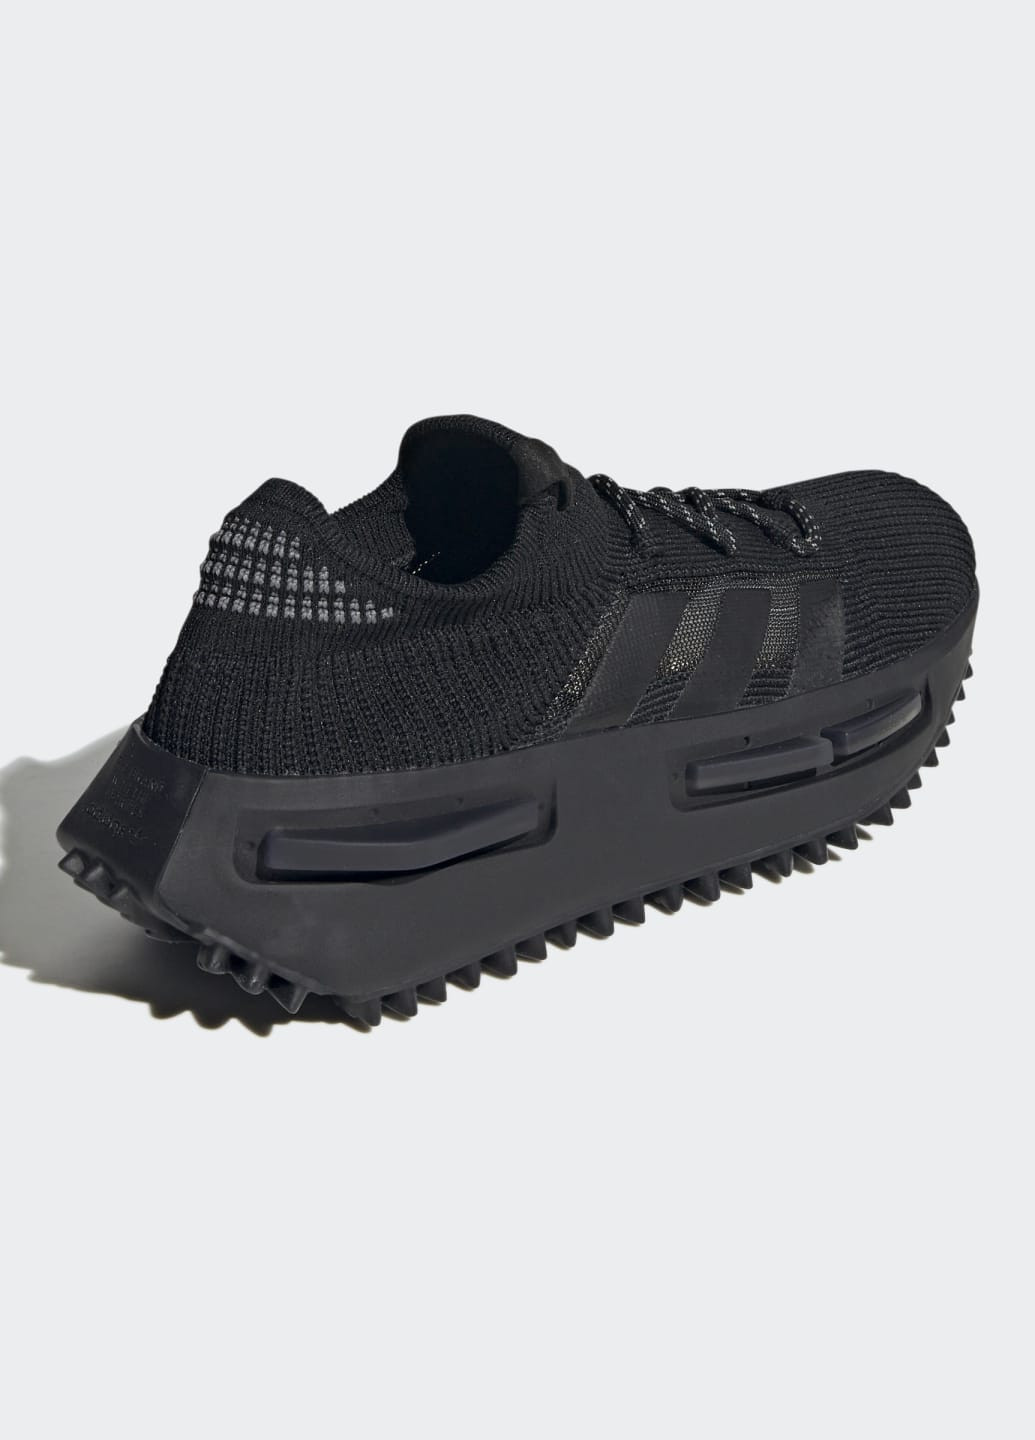 Черные всесезонные кроссовки nmd_s1 adidas